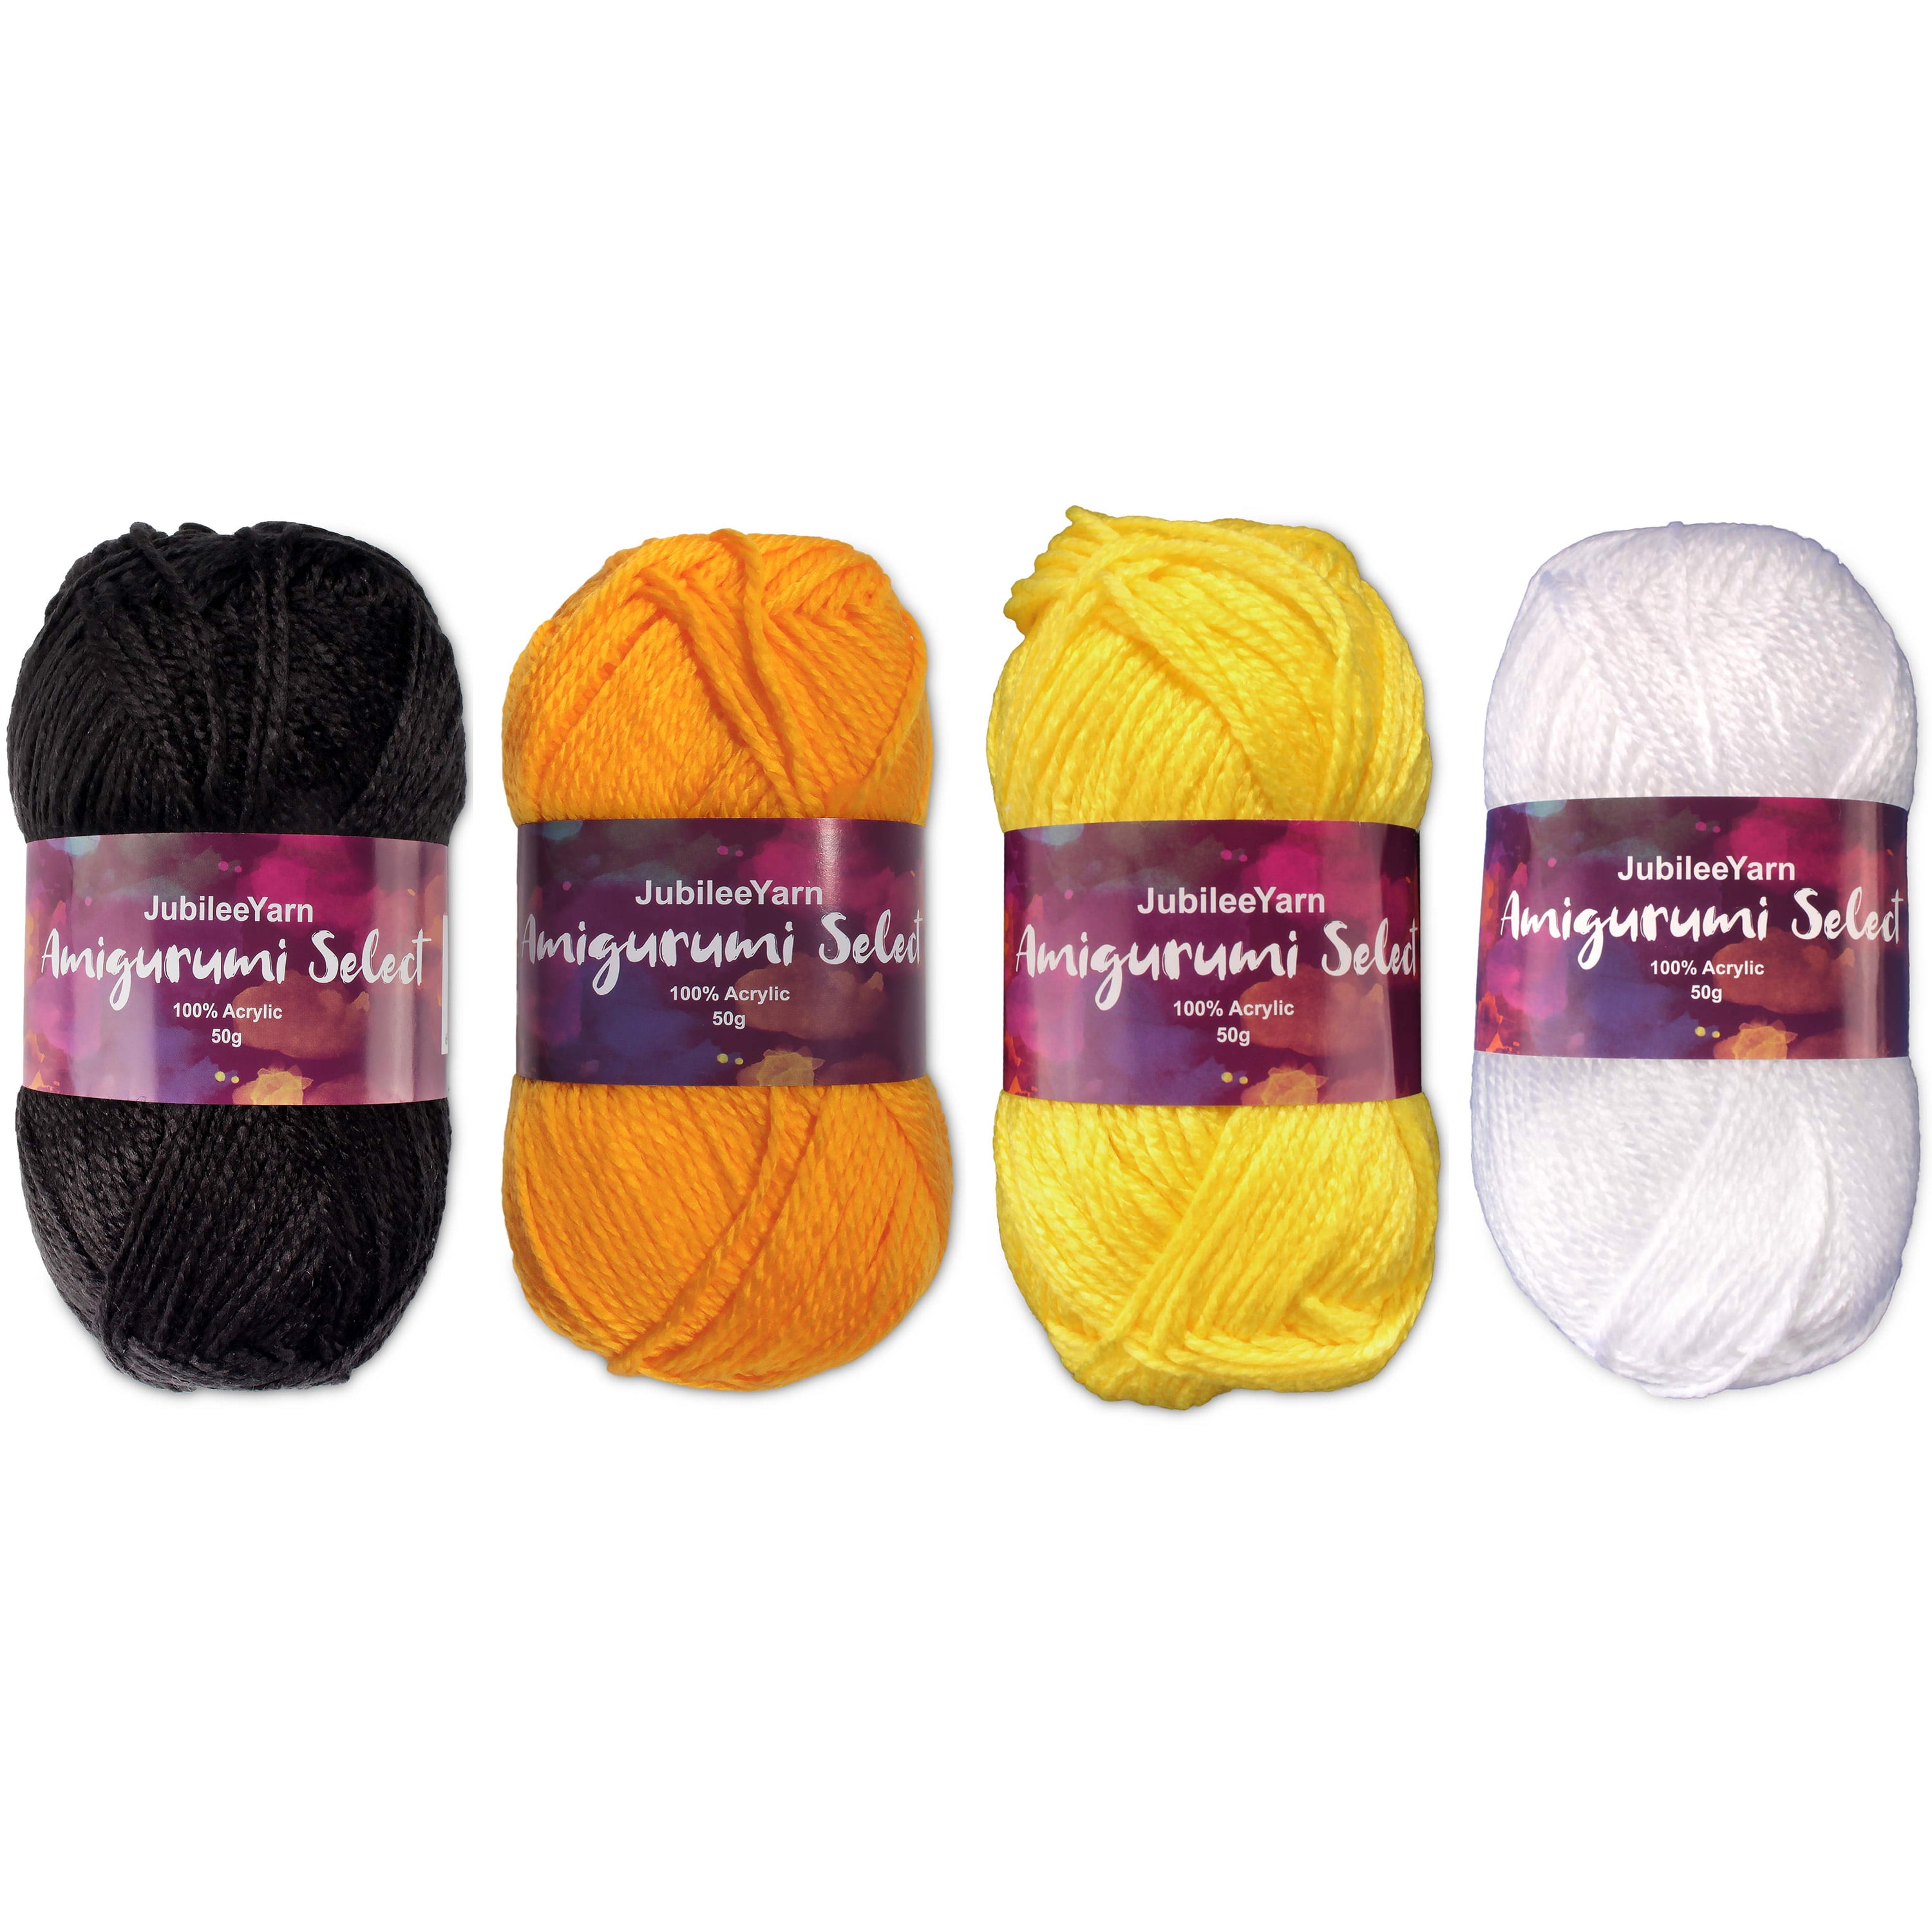 DMC Senso Crochet Quick Finish Yarn 1402 Yellow Gold Lot 153872 Metallic 3  Balls